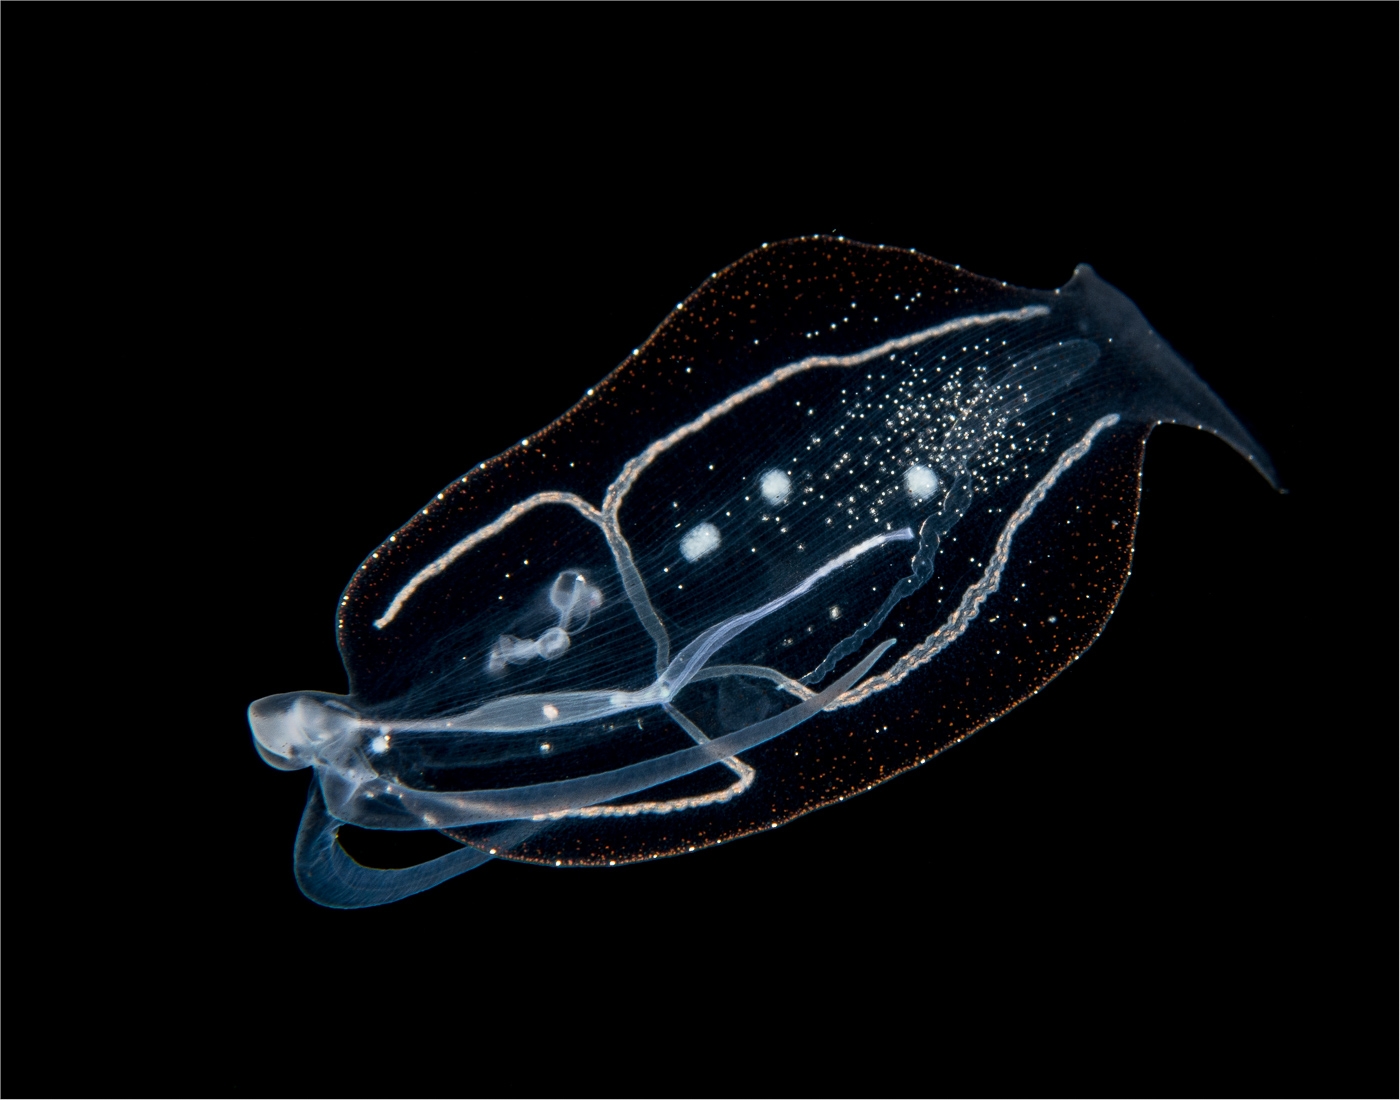 Pelagic Nudibranch 1